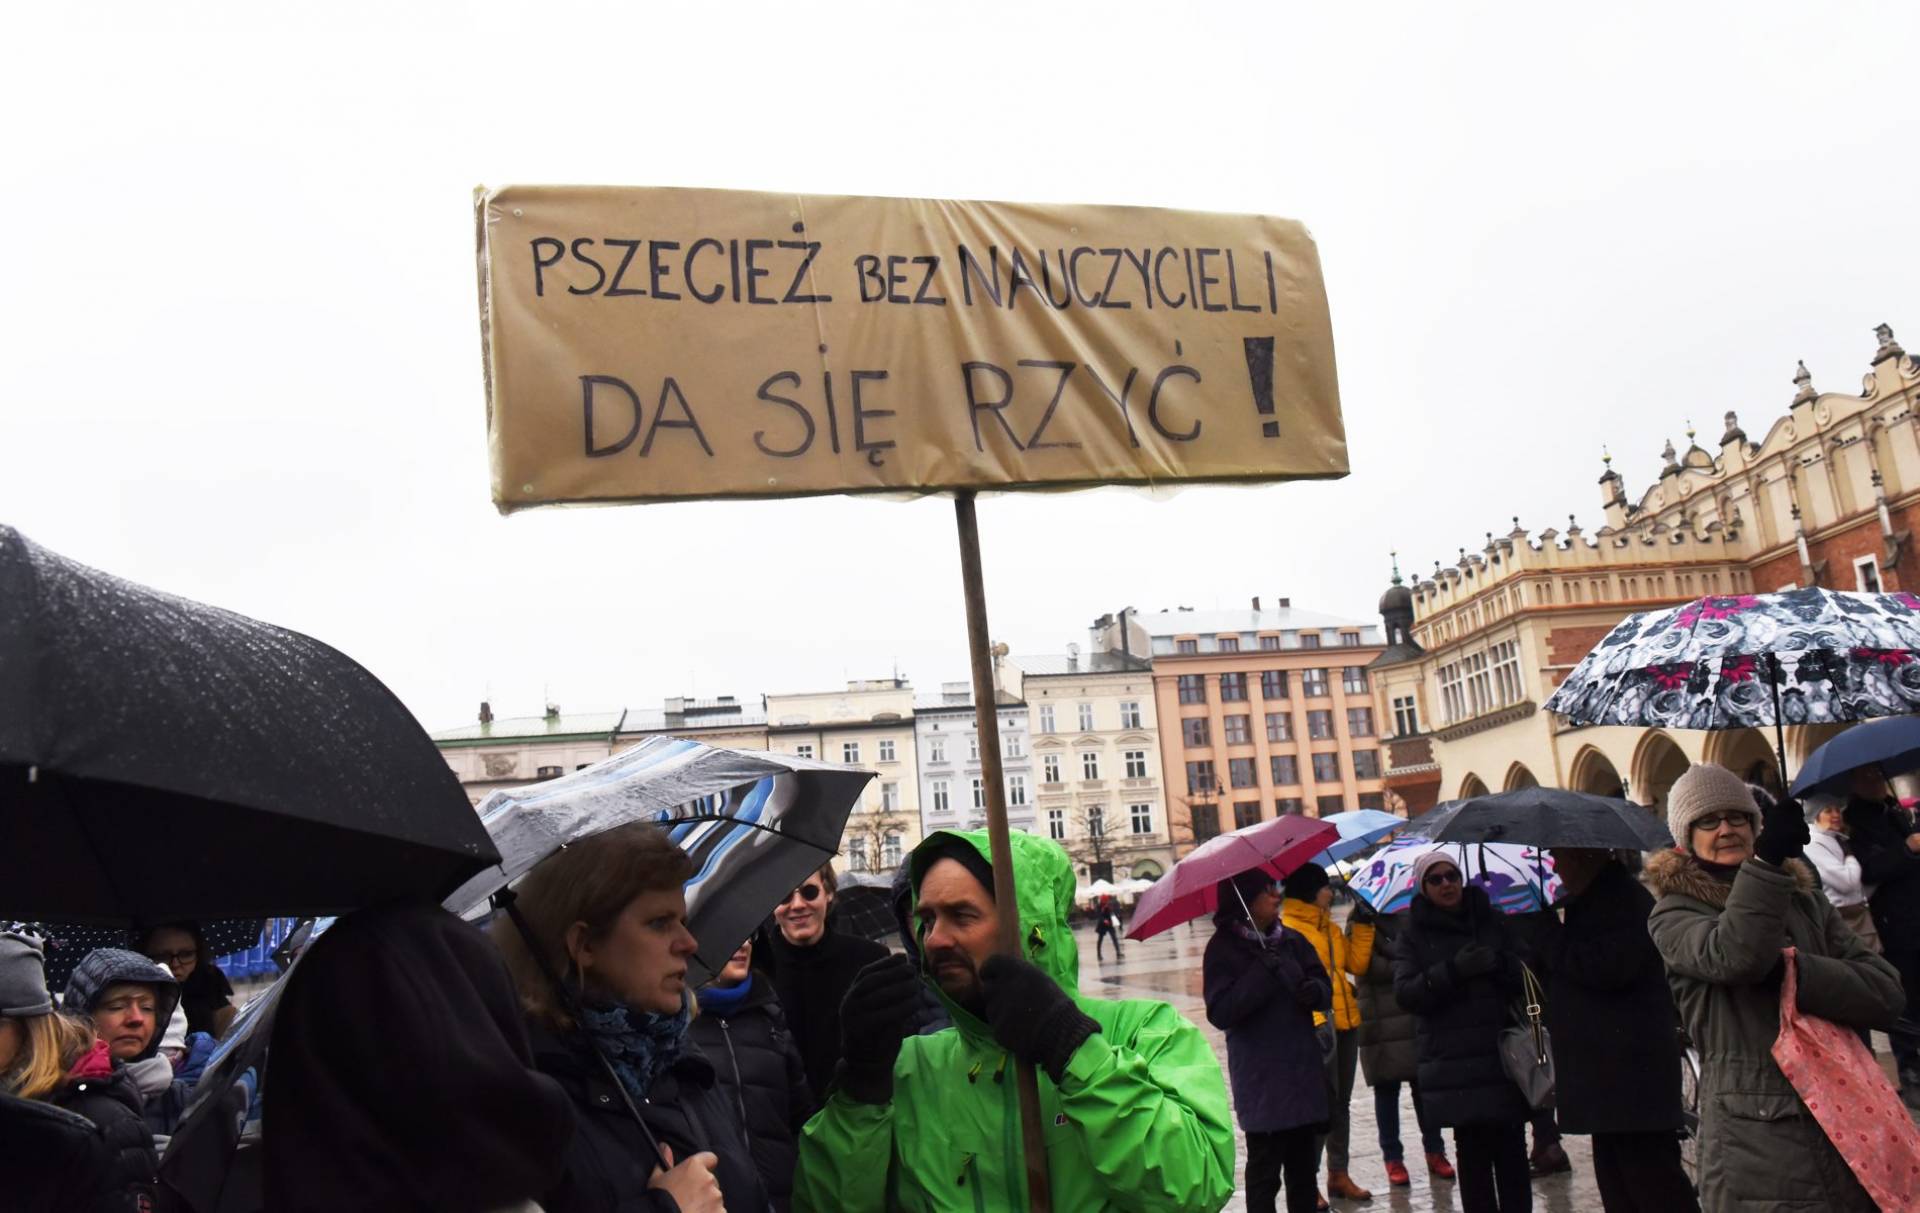 Krzysztof Piasecki oblicza ile musi potrwać strajk nauczycieli